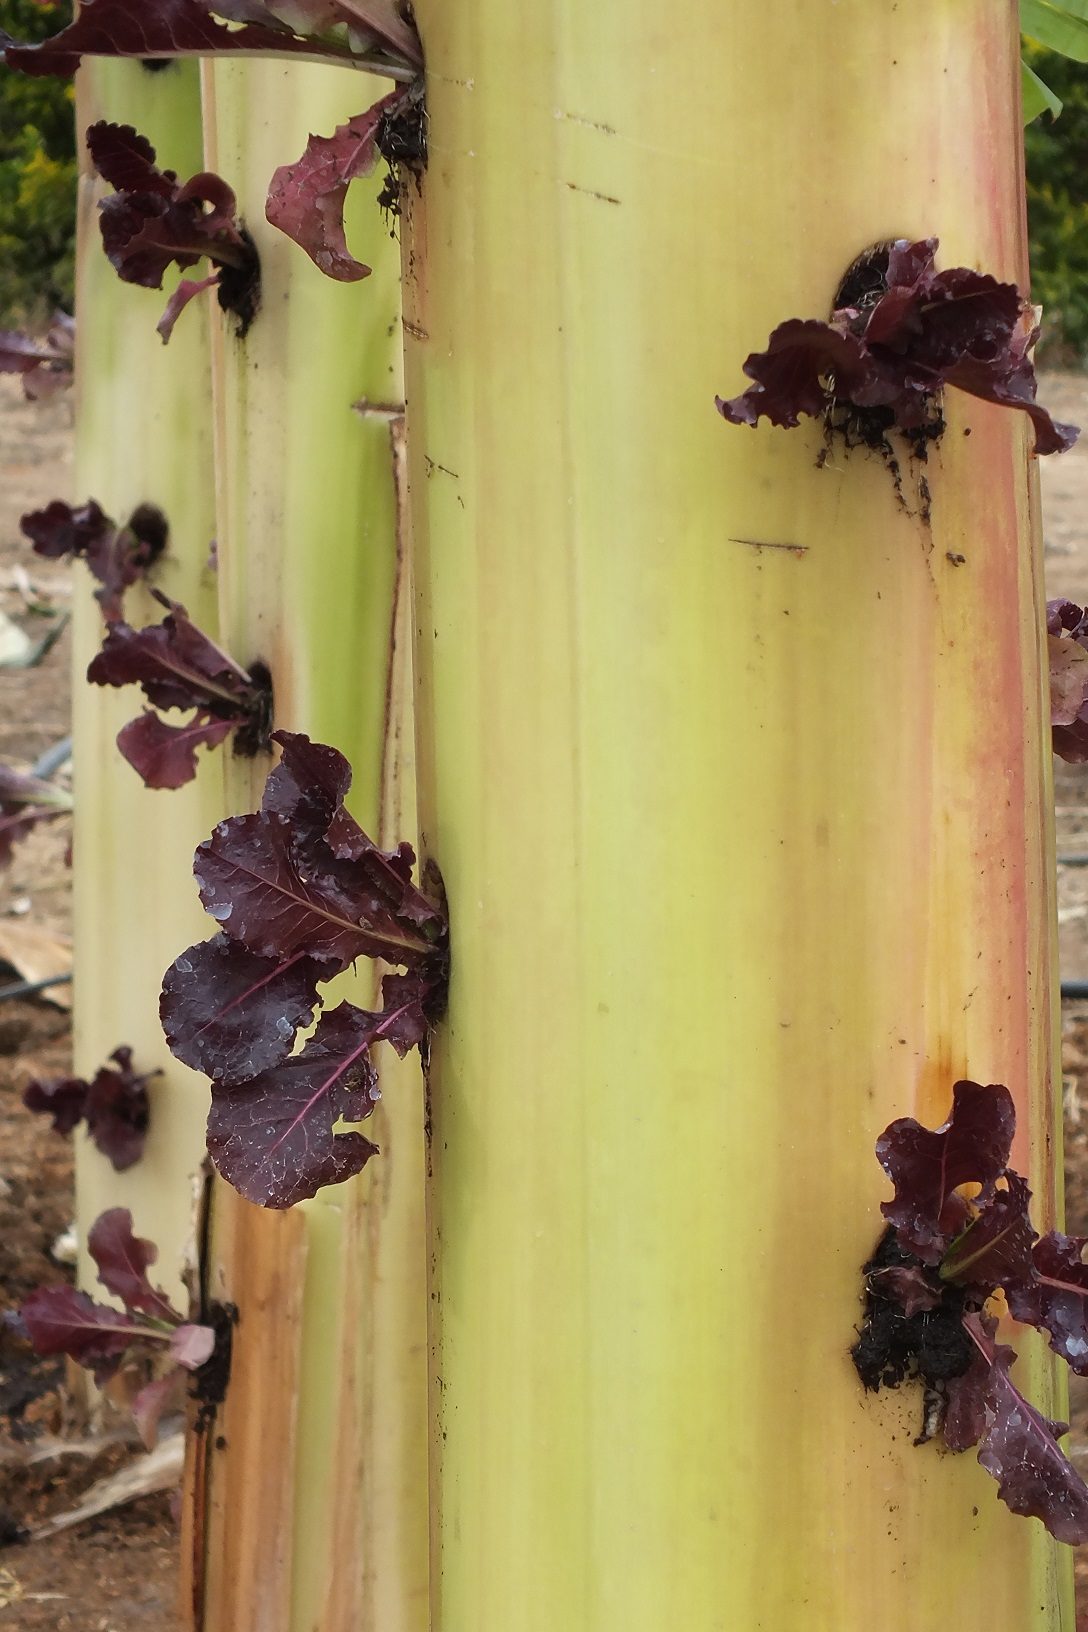 ปลูกผักไร้ดินบนต้นกล้วย ใครๆ ก็ทำได้ ใช้เวลาปลูก 30 วัน เก็บกินได้